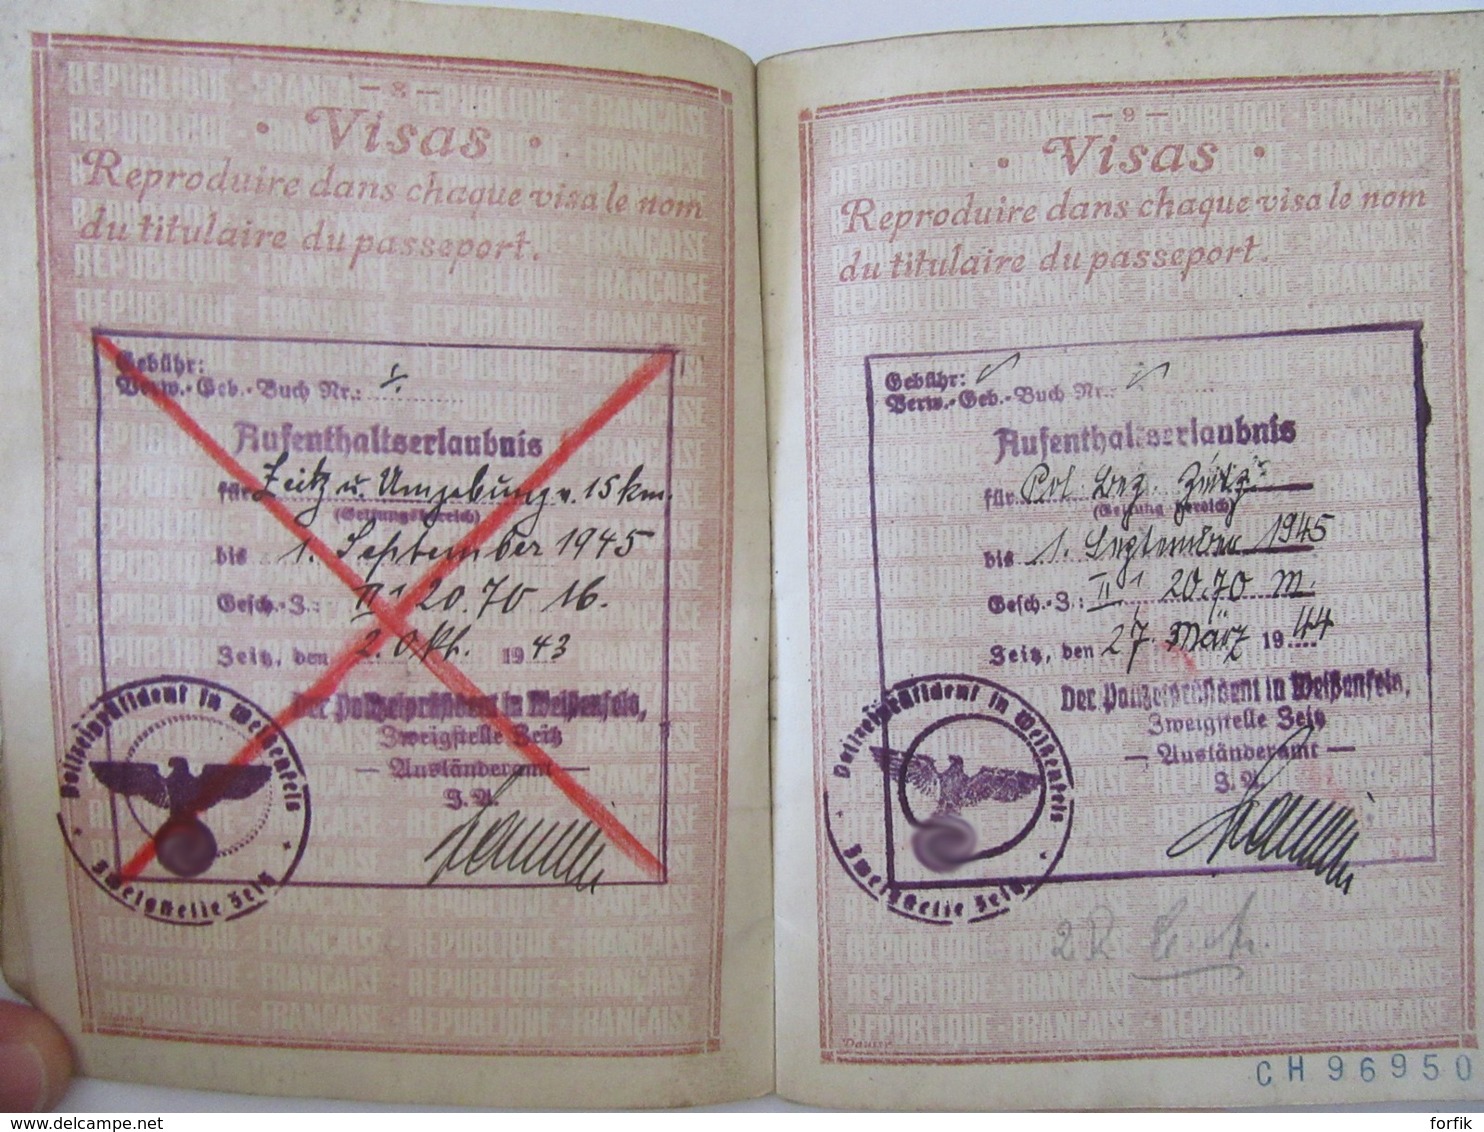 Guerre 39-45 Passeport français pour l'Allemagne avec visas Allemands - délivré en 1943 - Etat moyen